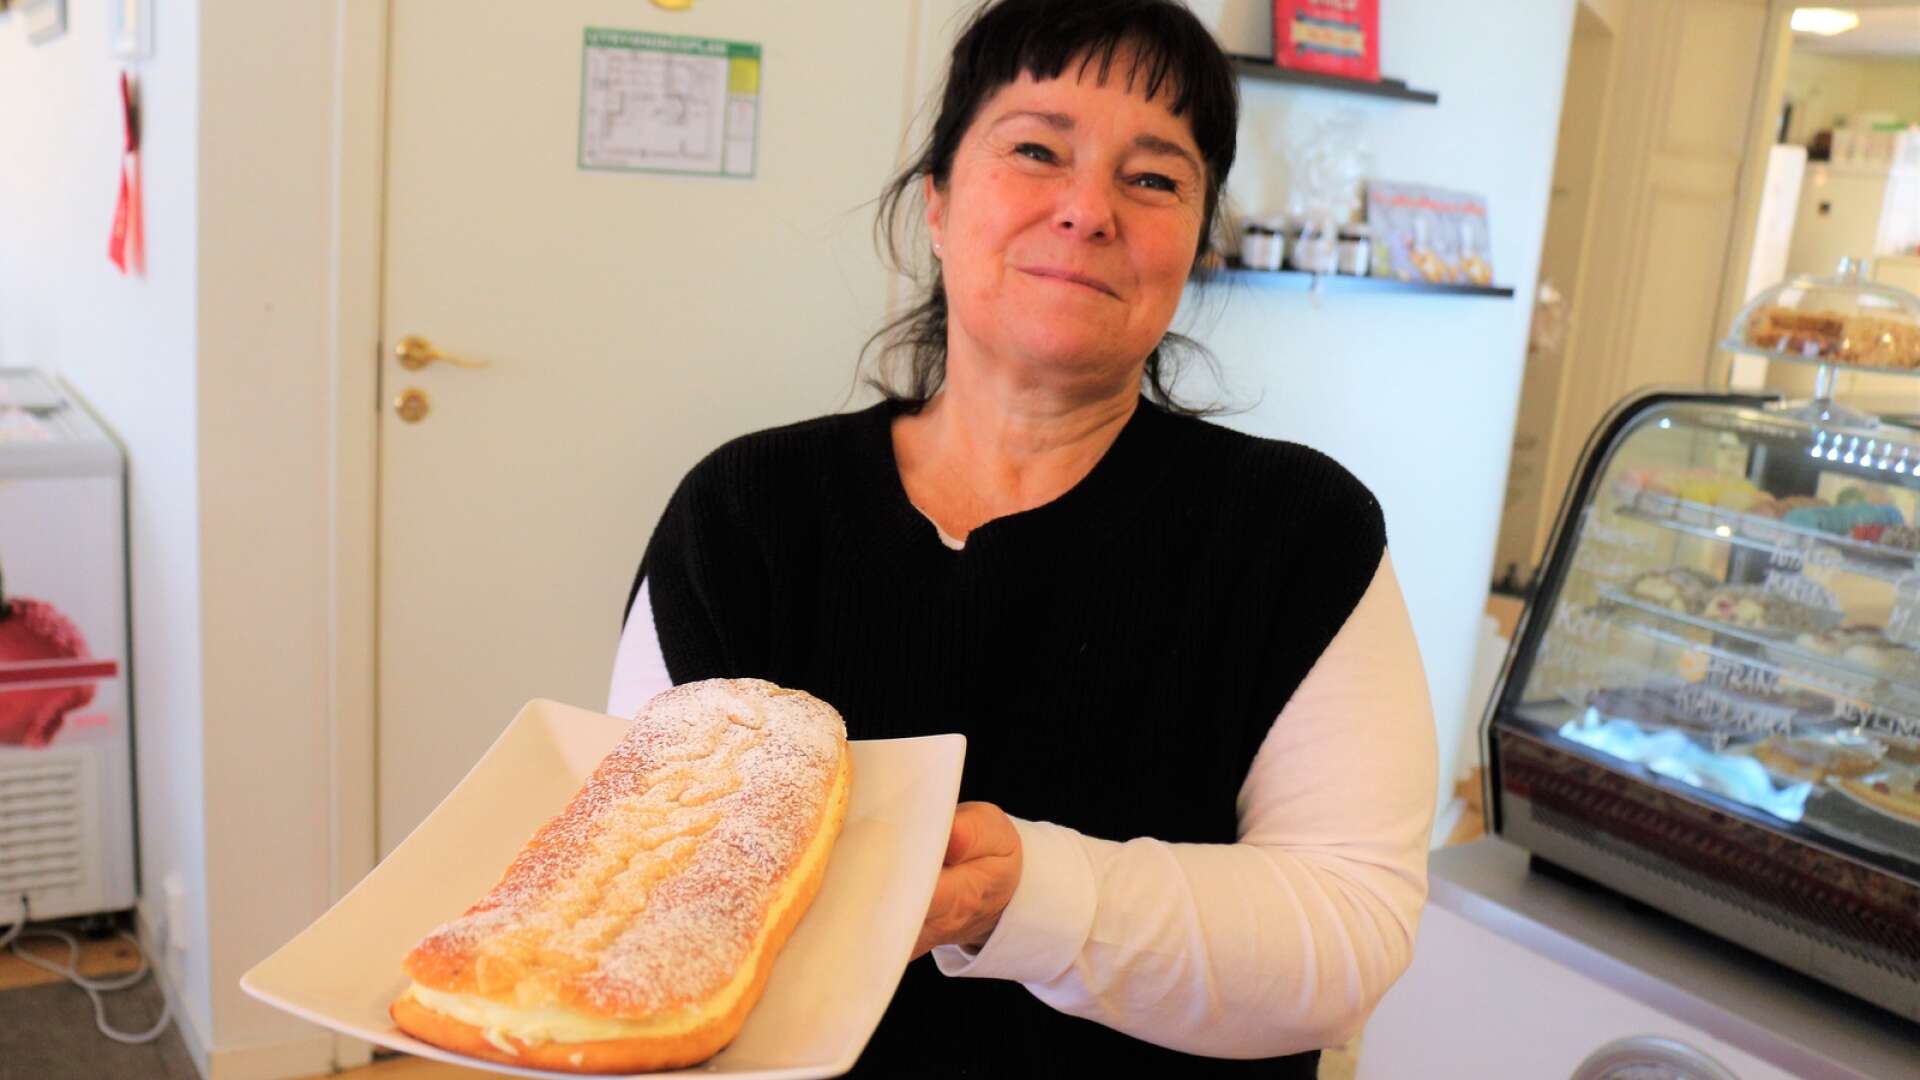 Suzie Tingvall lägger verksamheten i Mollys café på is. Det innebär att originalströssellängden försvinner. För gott?